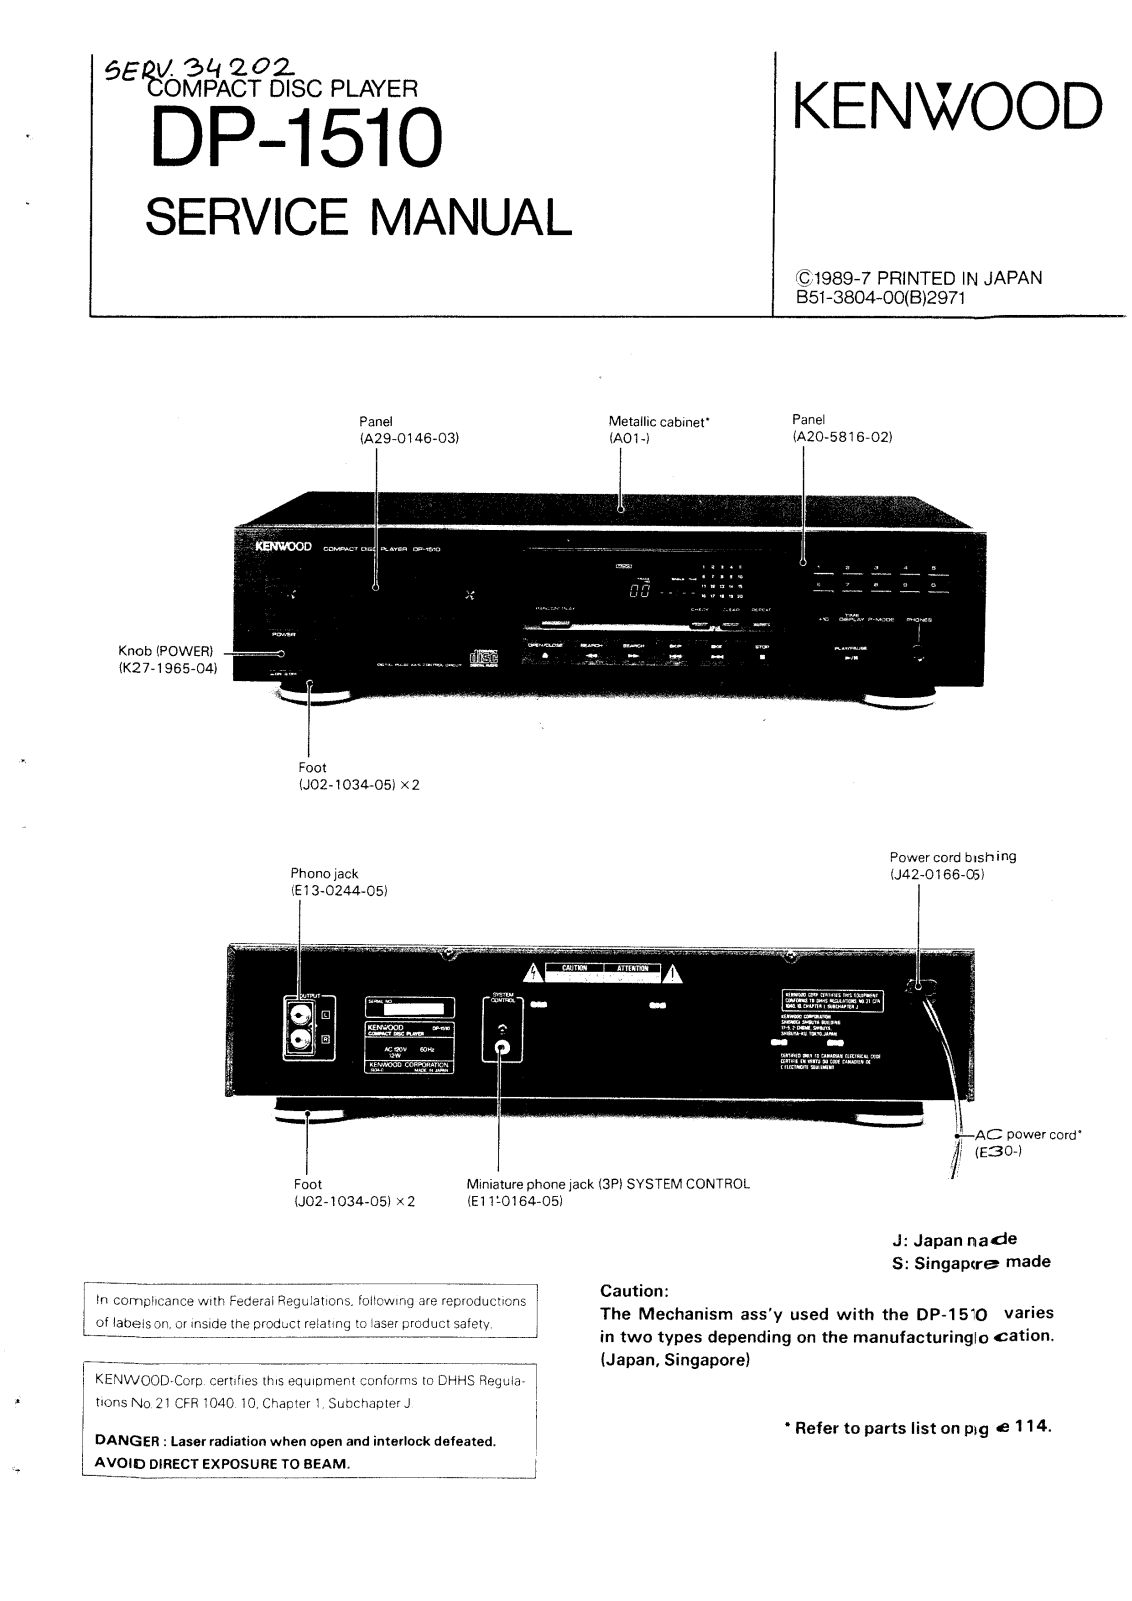 Kenwood DP-1510 Service manual